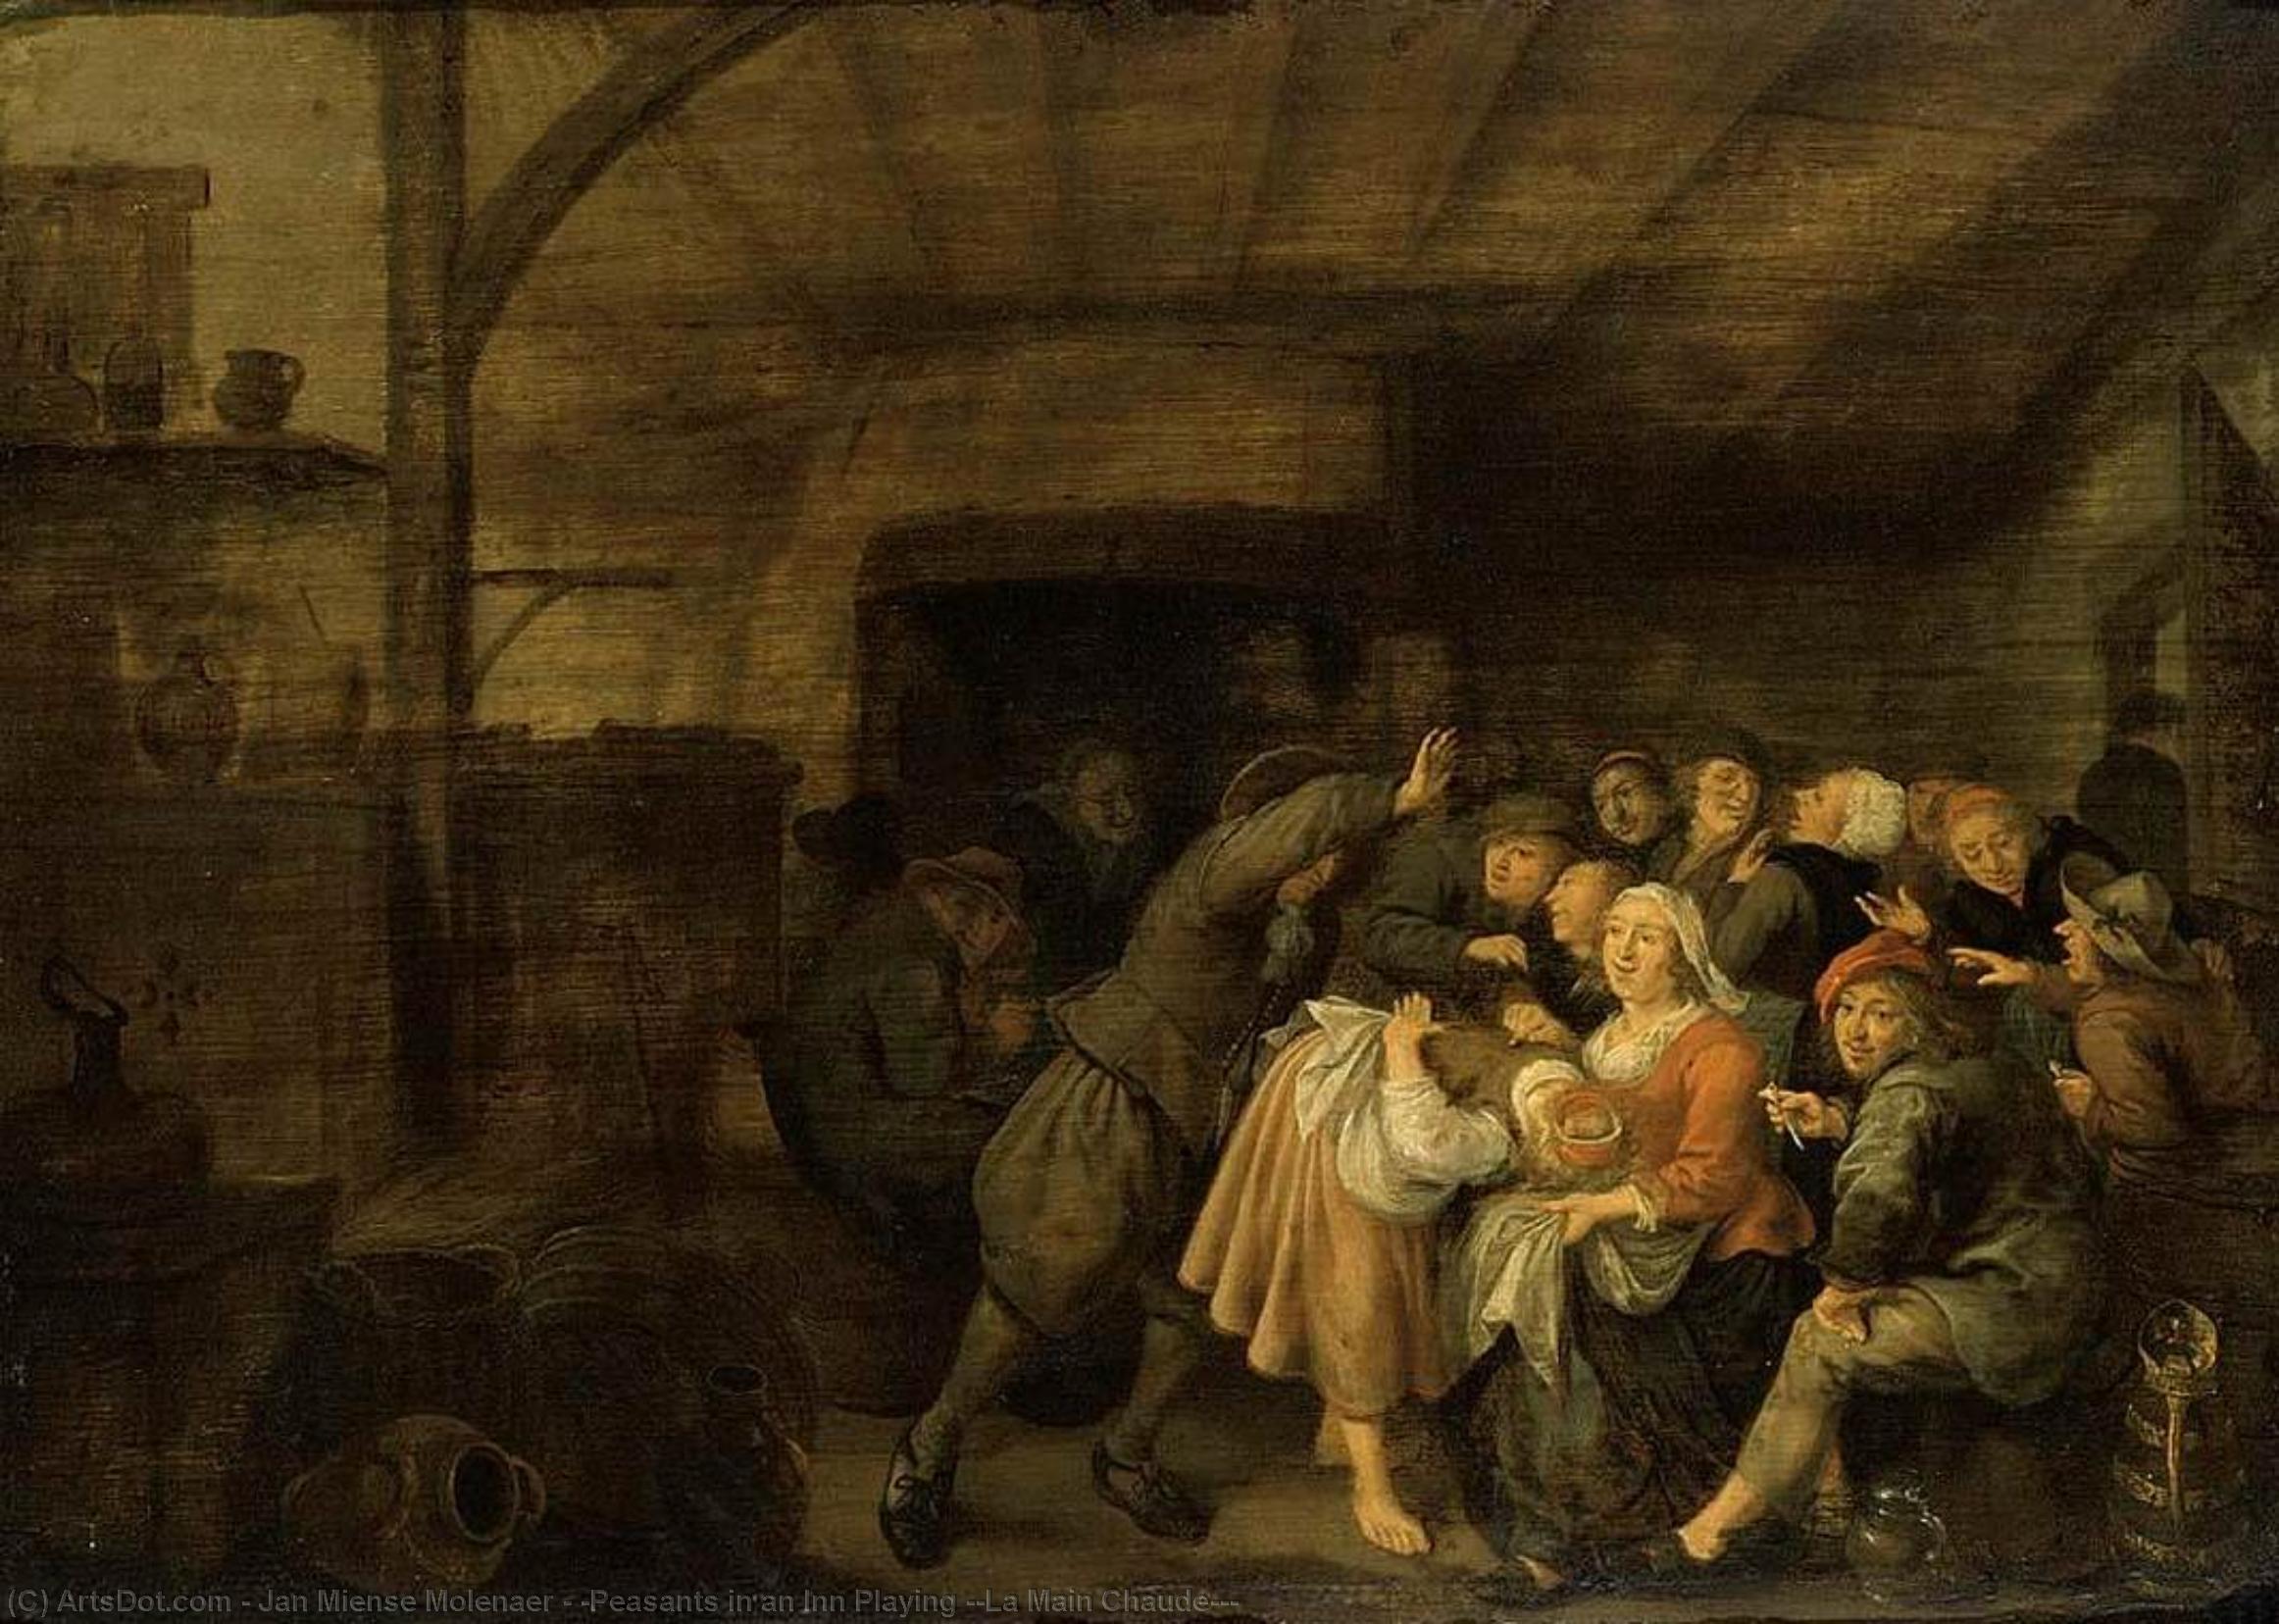 WikiOO.org - Енциклопедия за изящни изкуства - Живопис, Произведения на изкуството Jan Miense Molenaer - 'Peasants in an Inn Playing ''La Main Chaude'''